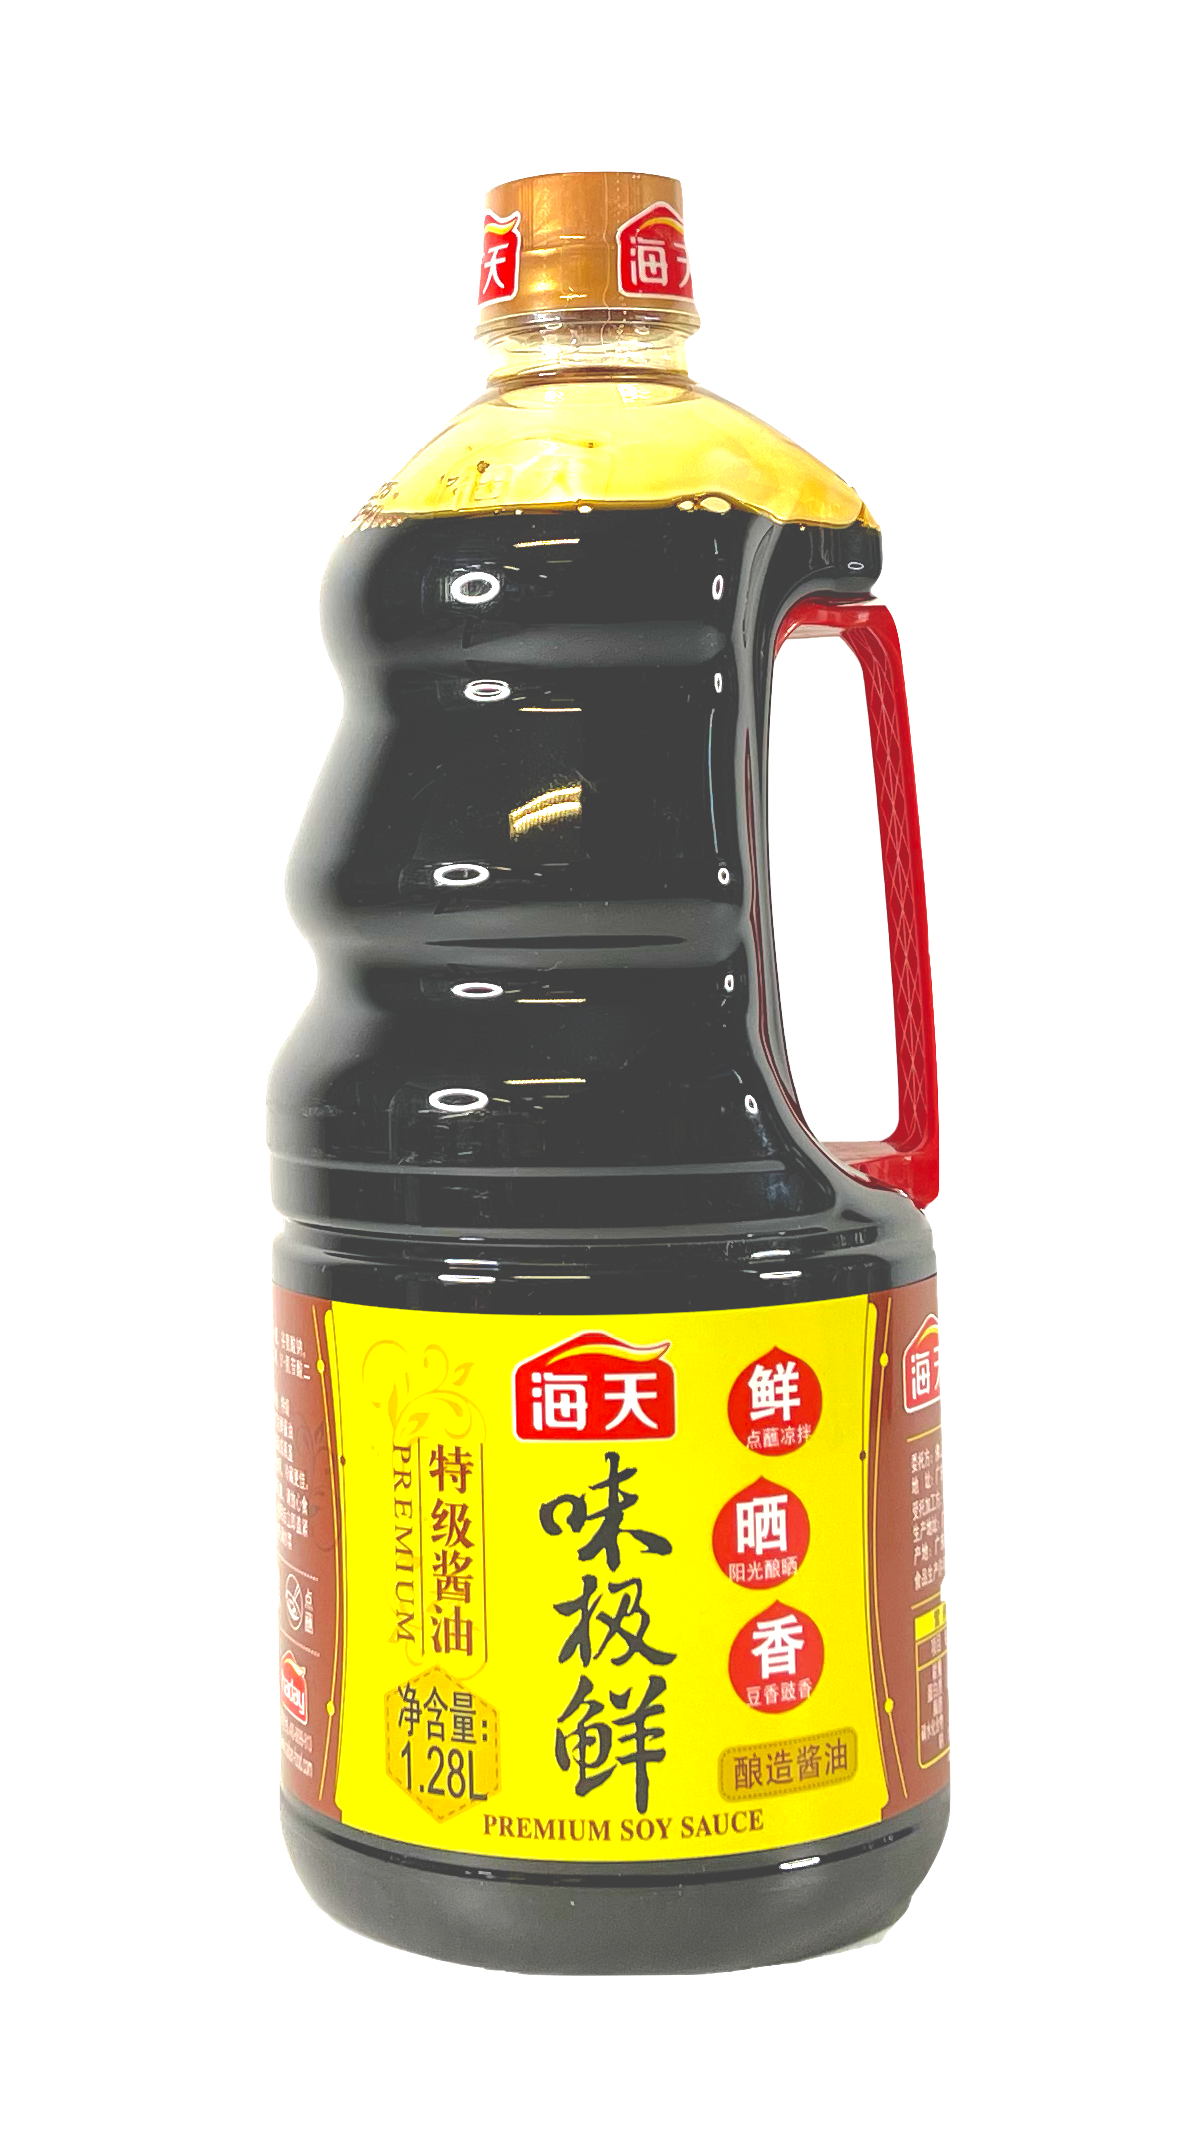 Soya Sauce Premium 1.28L Wei Ji Xian Haitian China